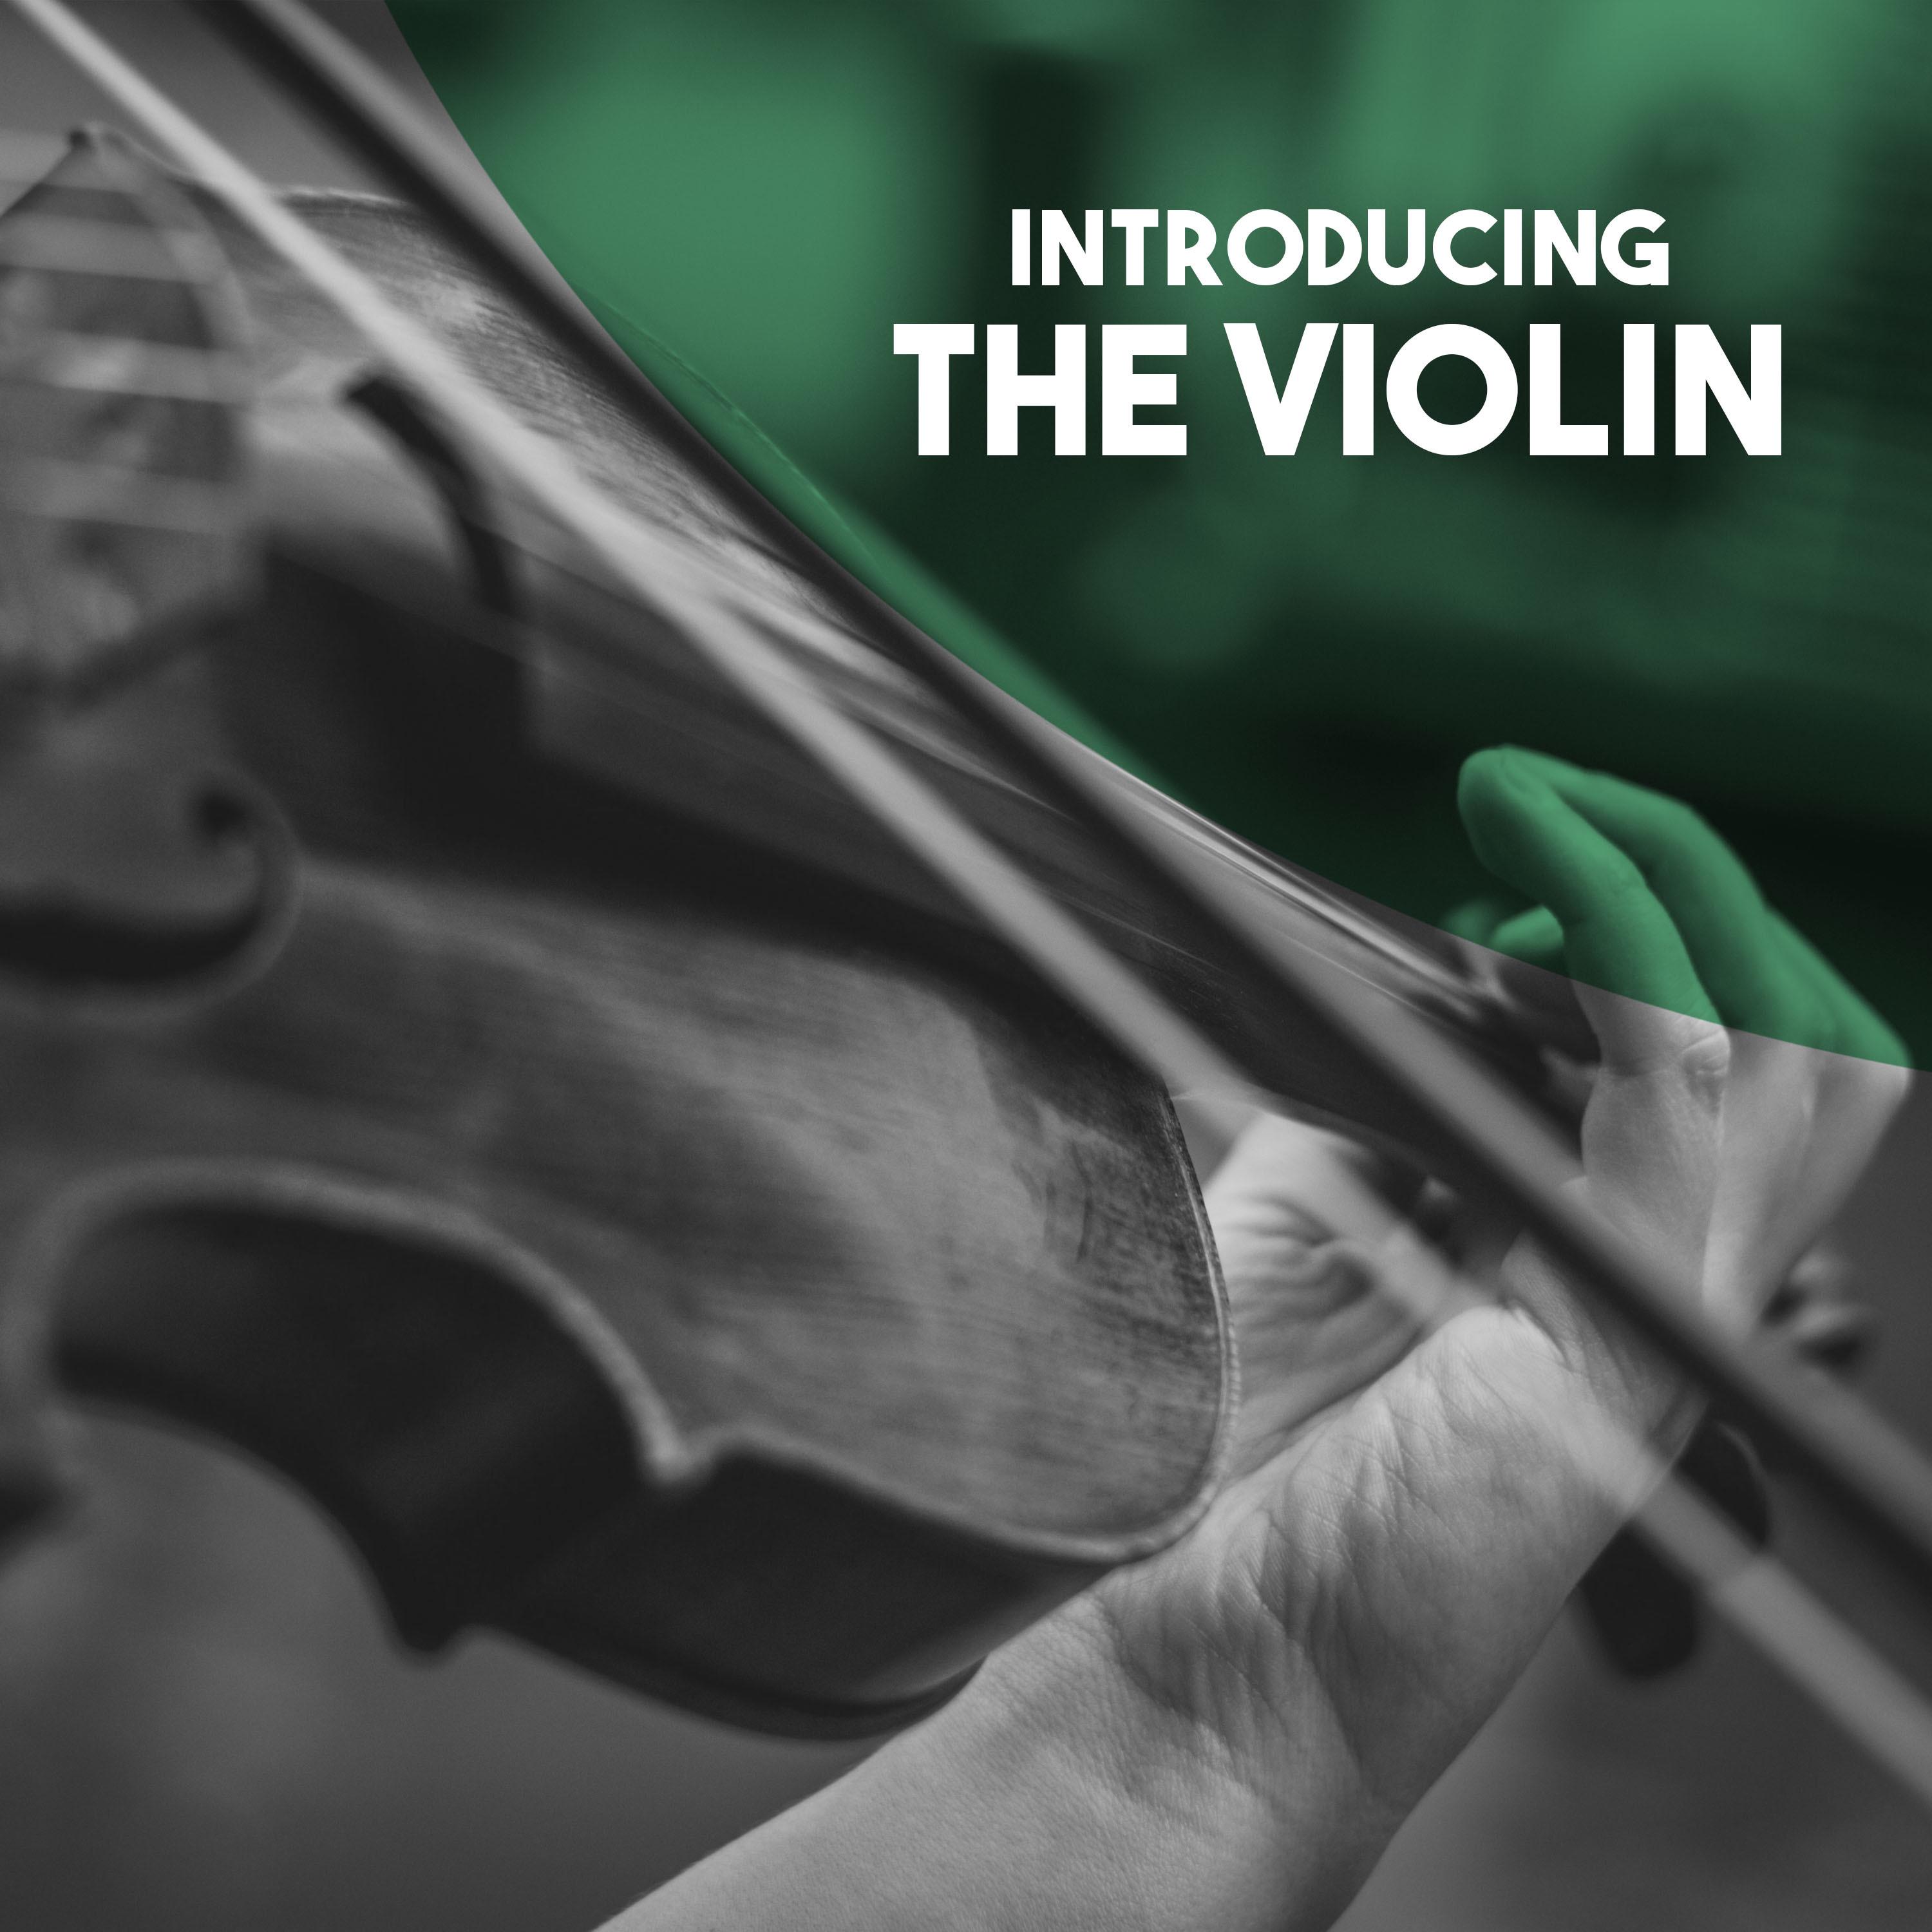 Violin Concerto in A Minor, Op. 82